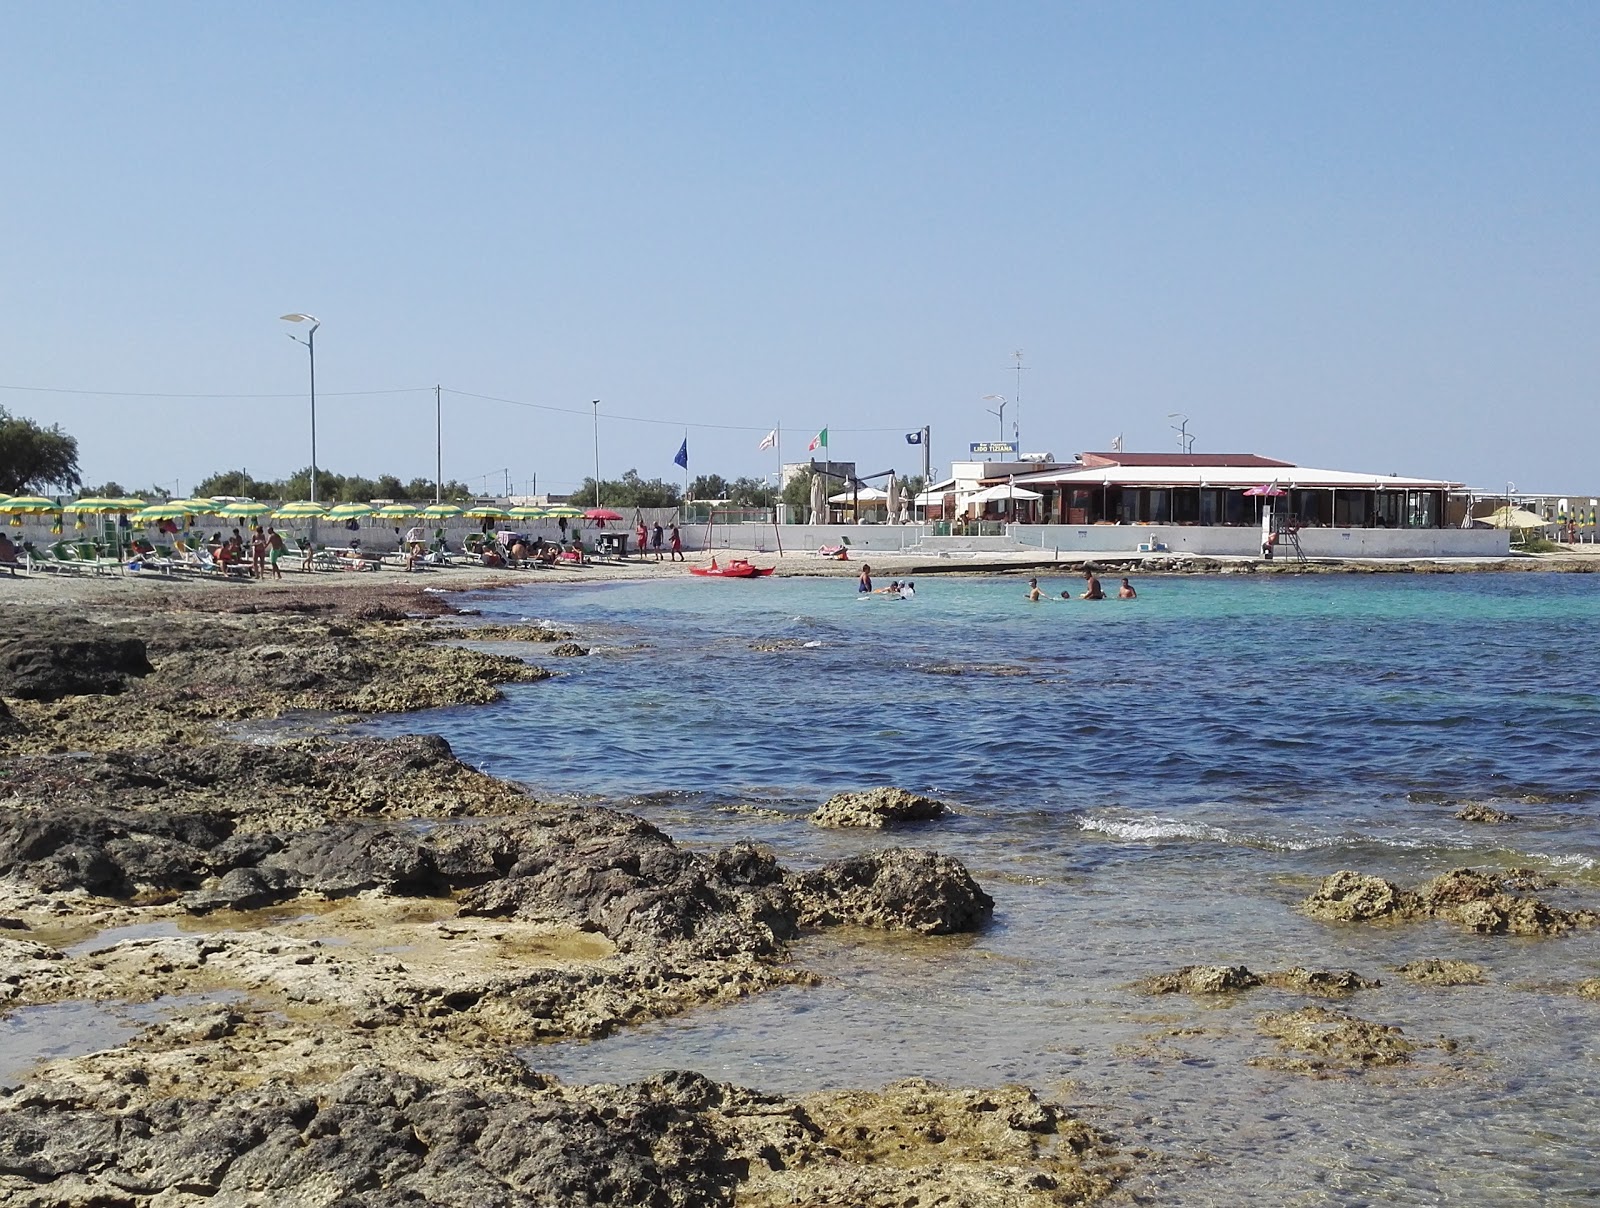 Foto de Spiaggia di Specchiolla ubicado en área natural